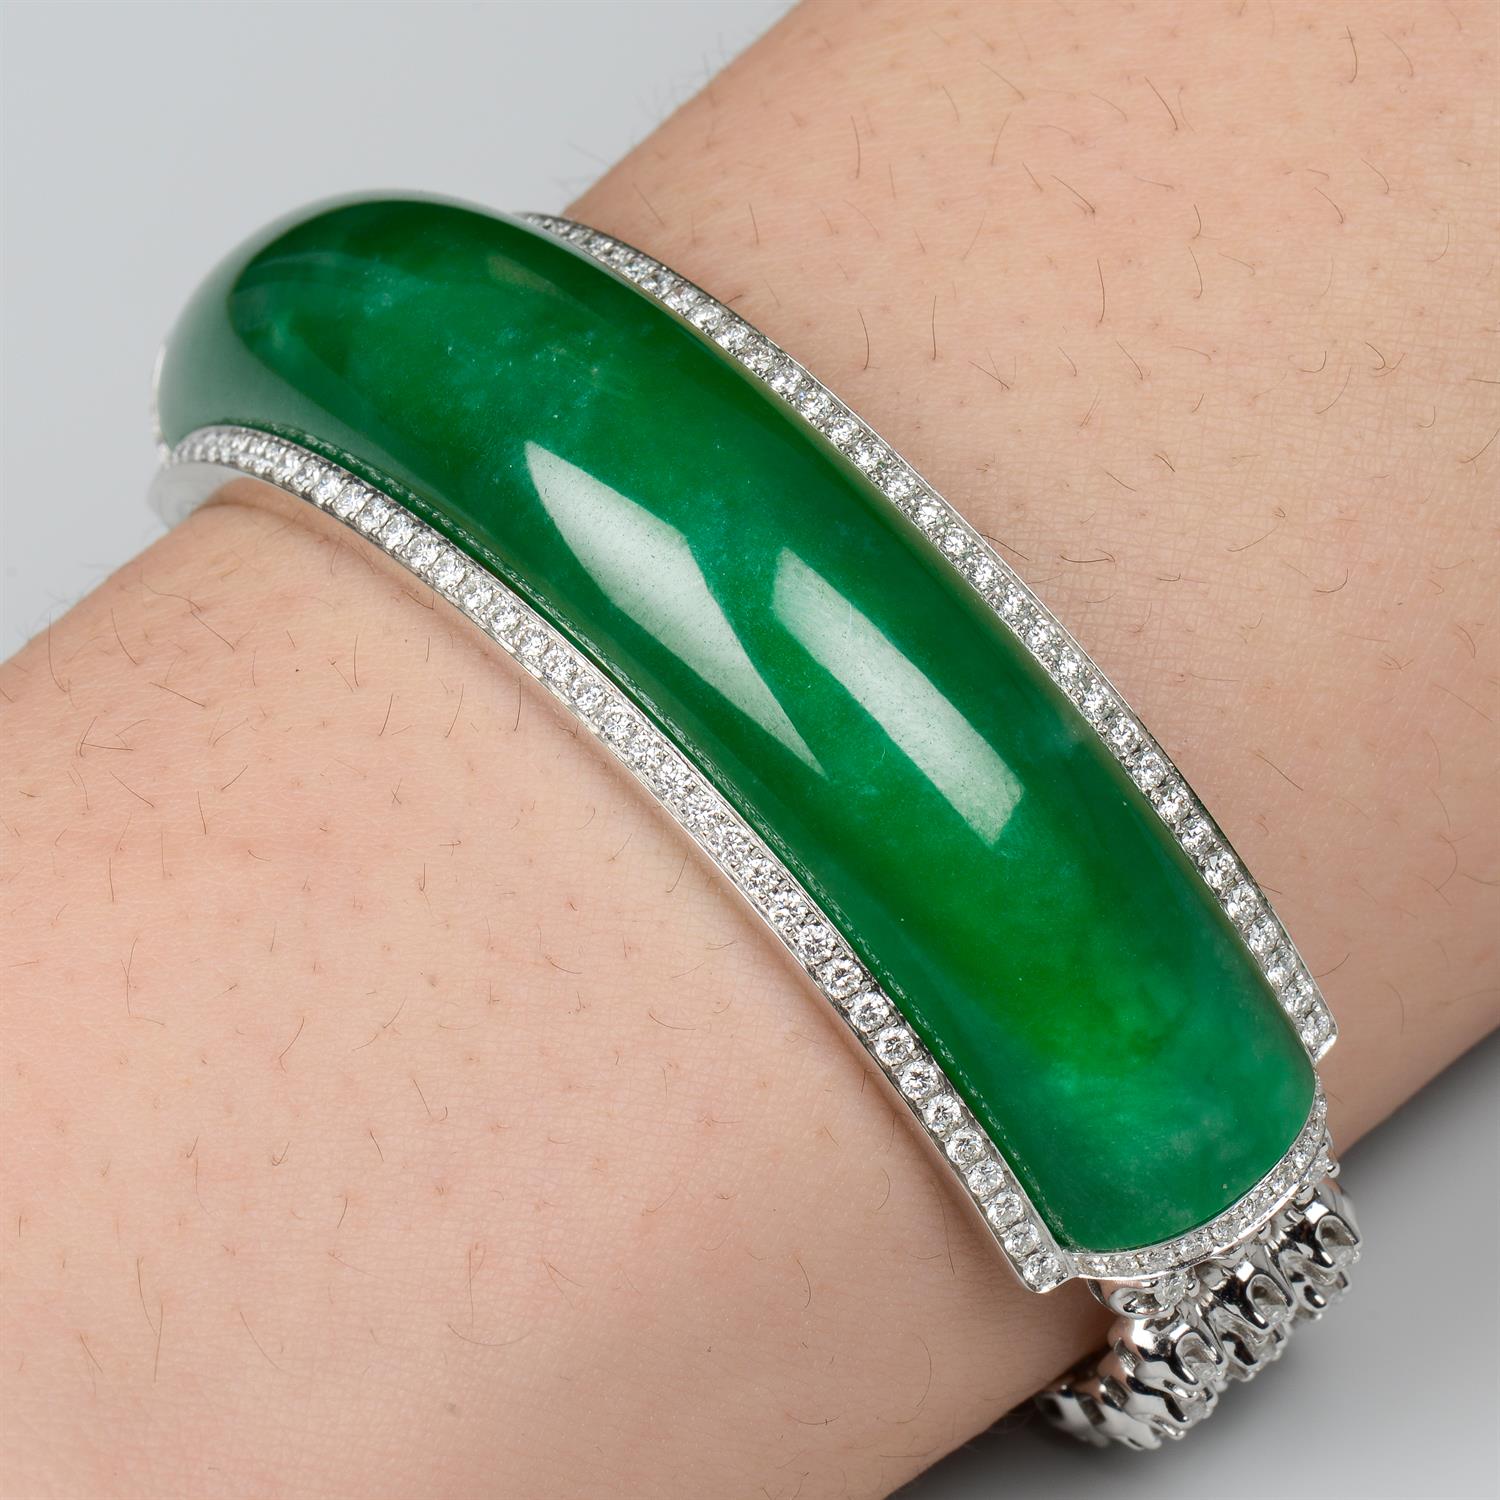 Jade and diamond bracelet, by Jadeite & Co.